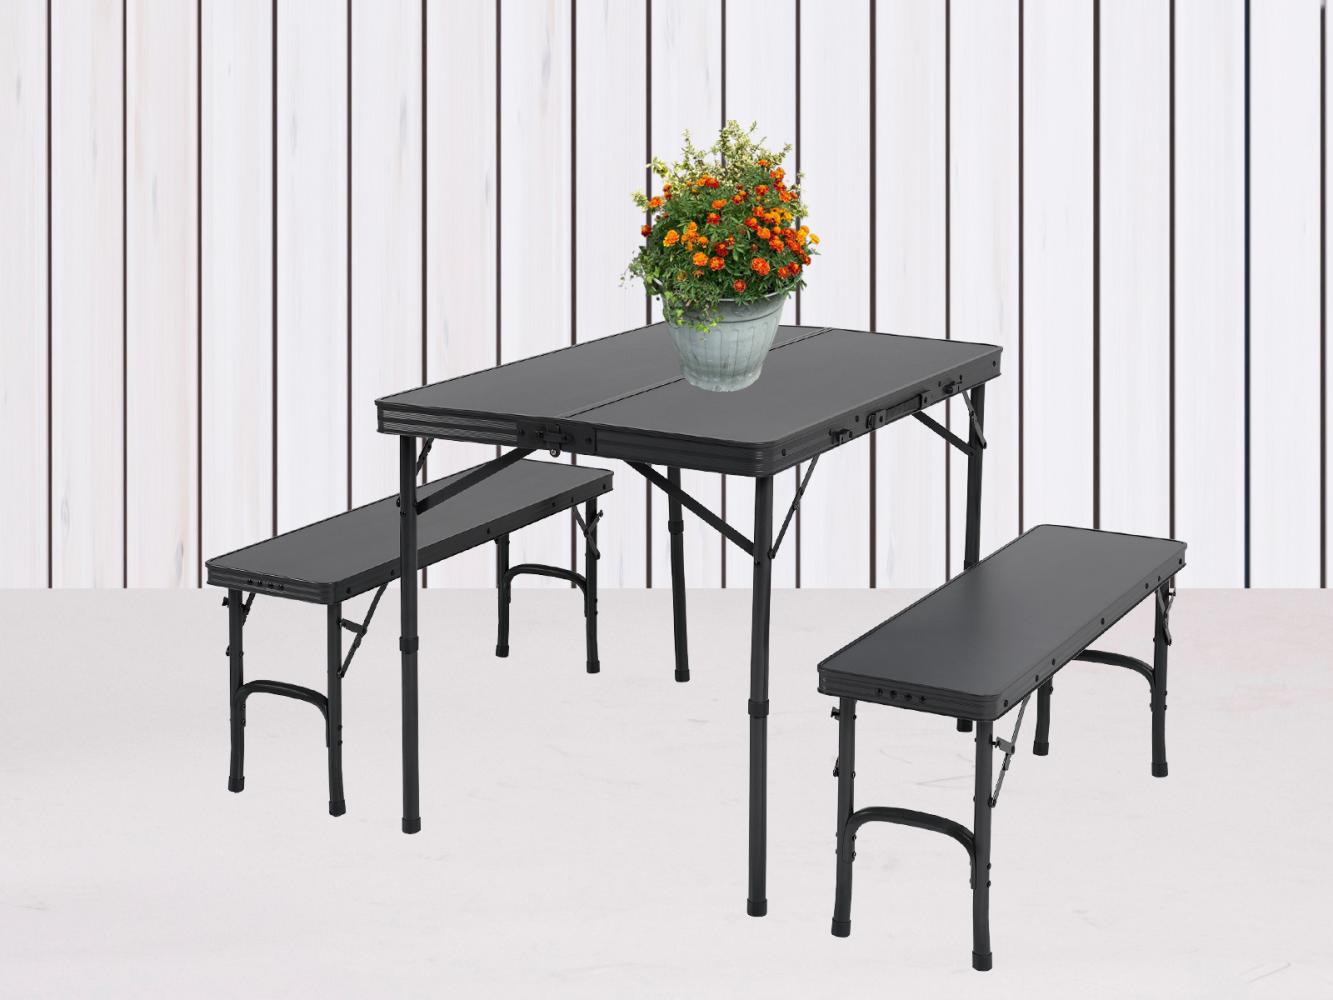 Picknicktisch-SET MAINE klappbar aus Aluminium für 4 Personen Bild 1